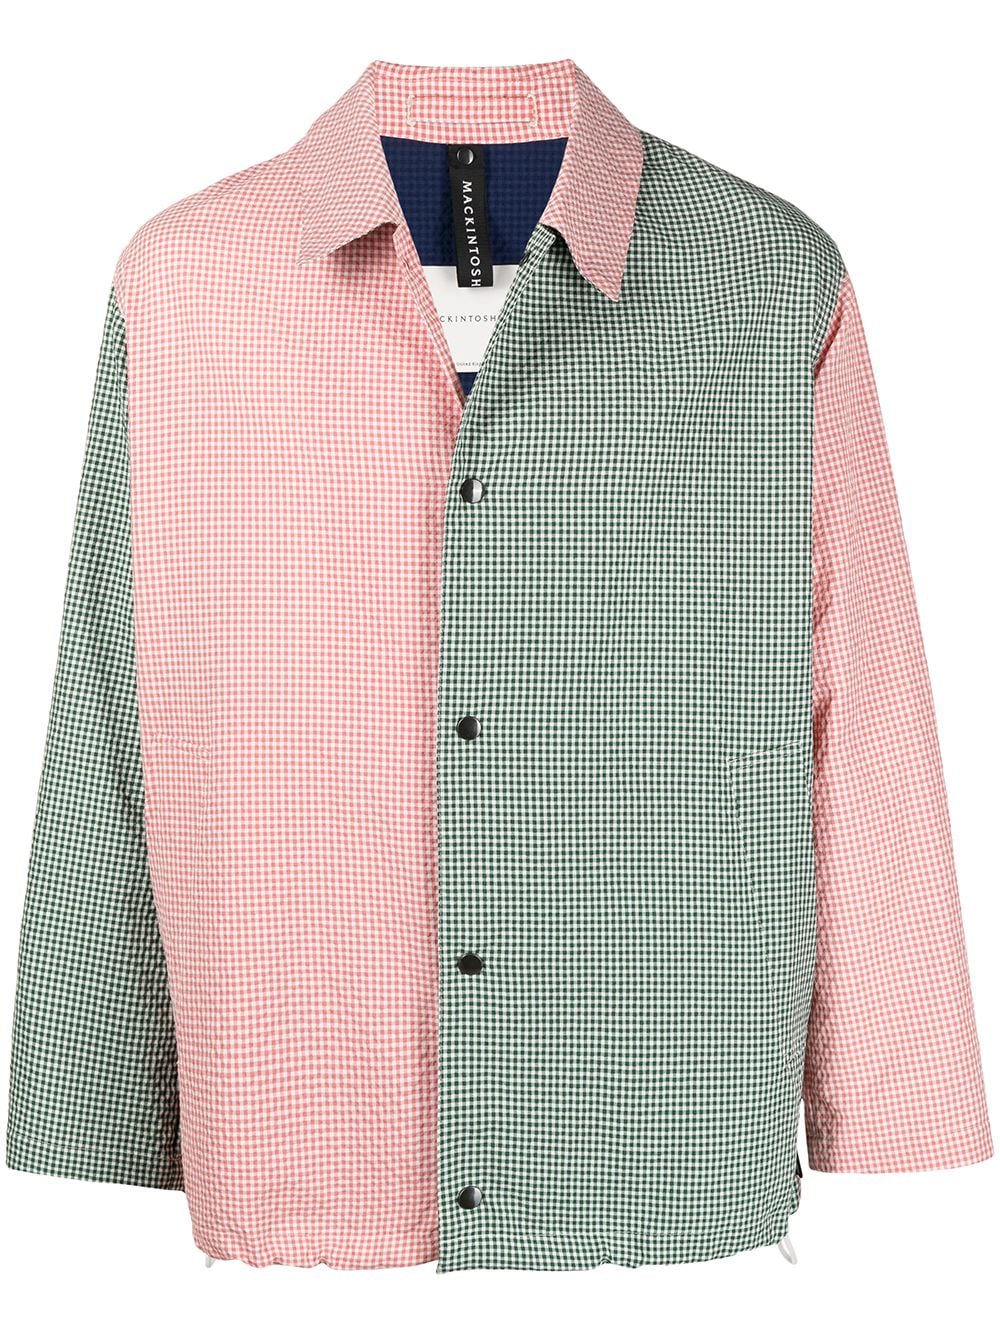 фото Mackintosh куртка-рубашка с контрастными вставками